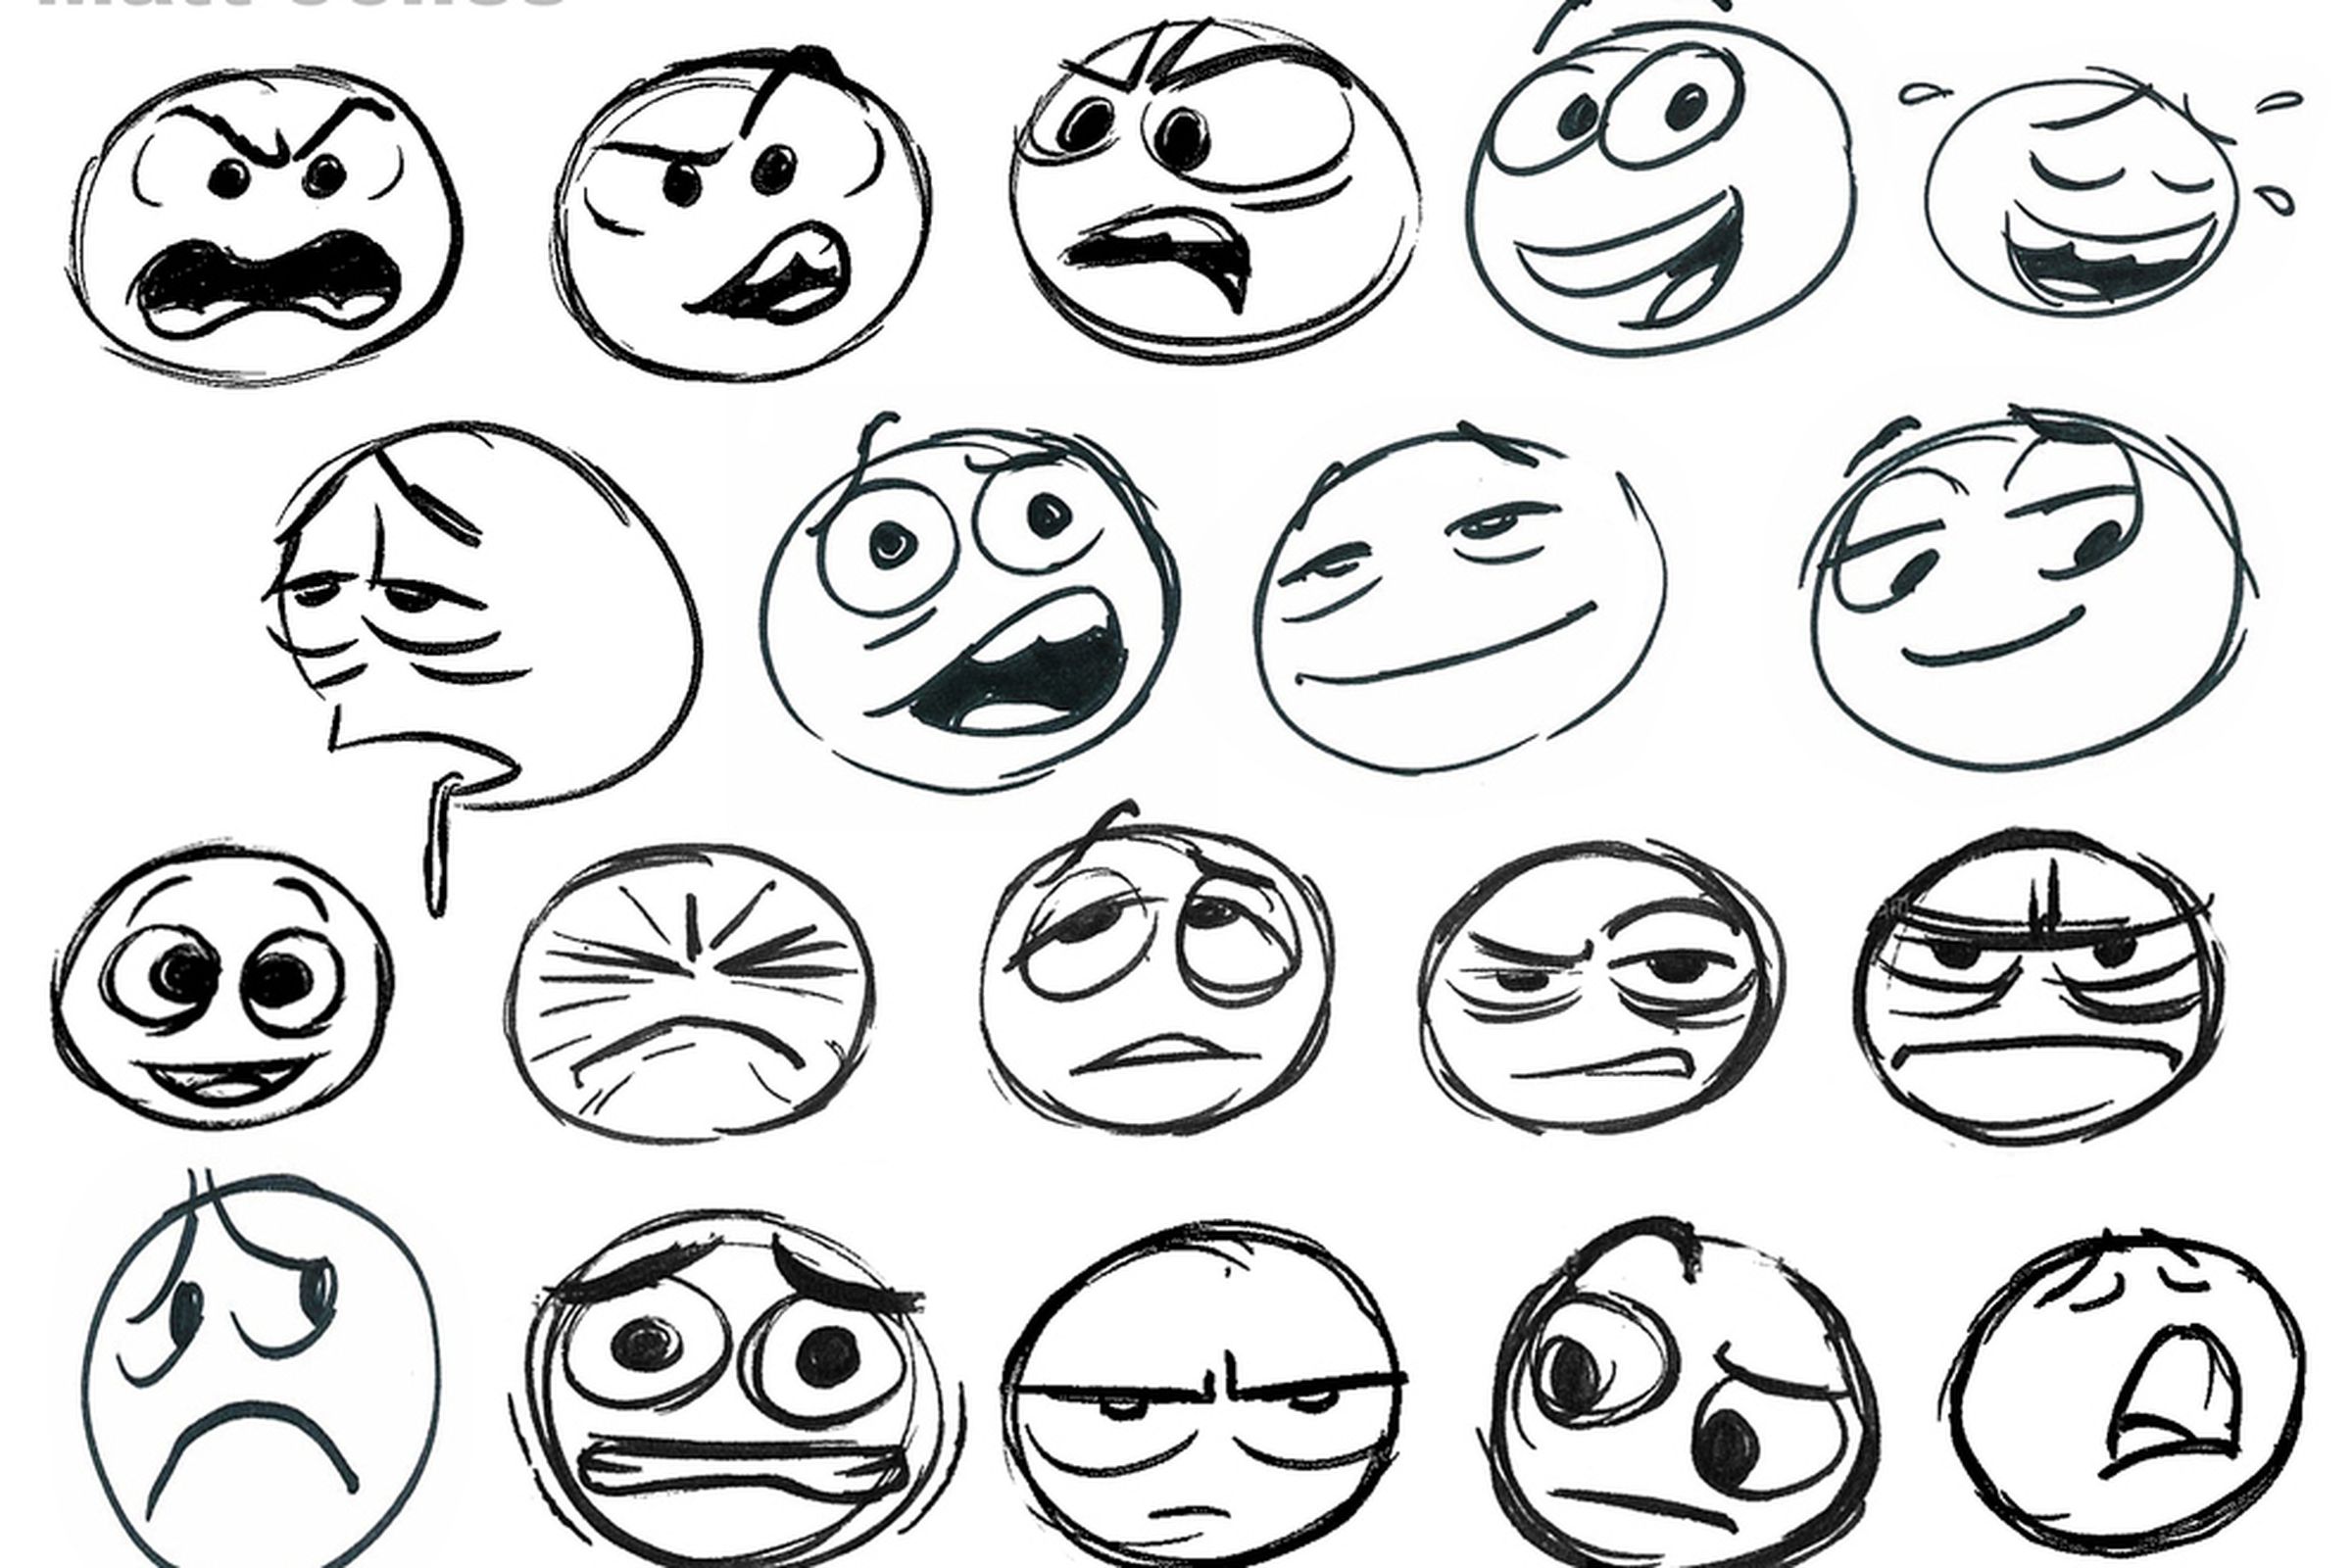 MATT JONES BUZZFEED facebook emoticon sketches